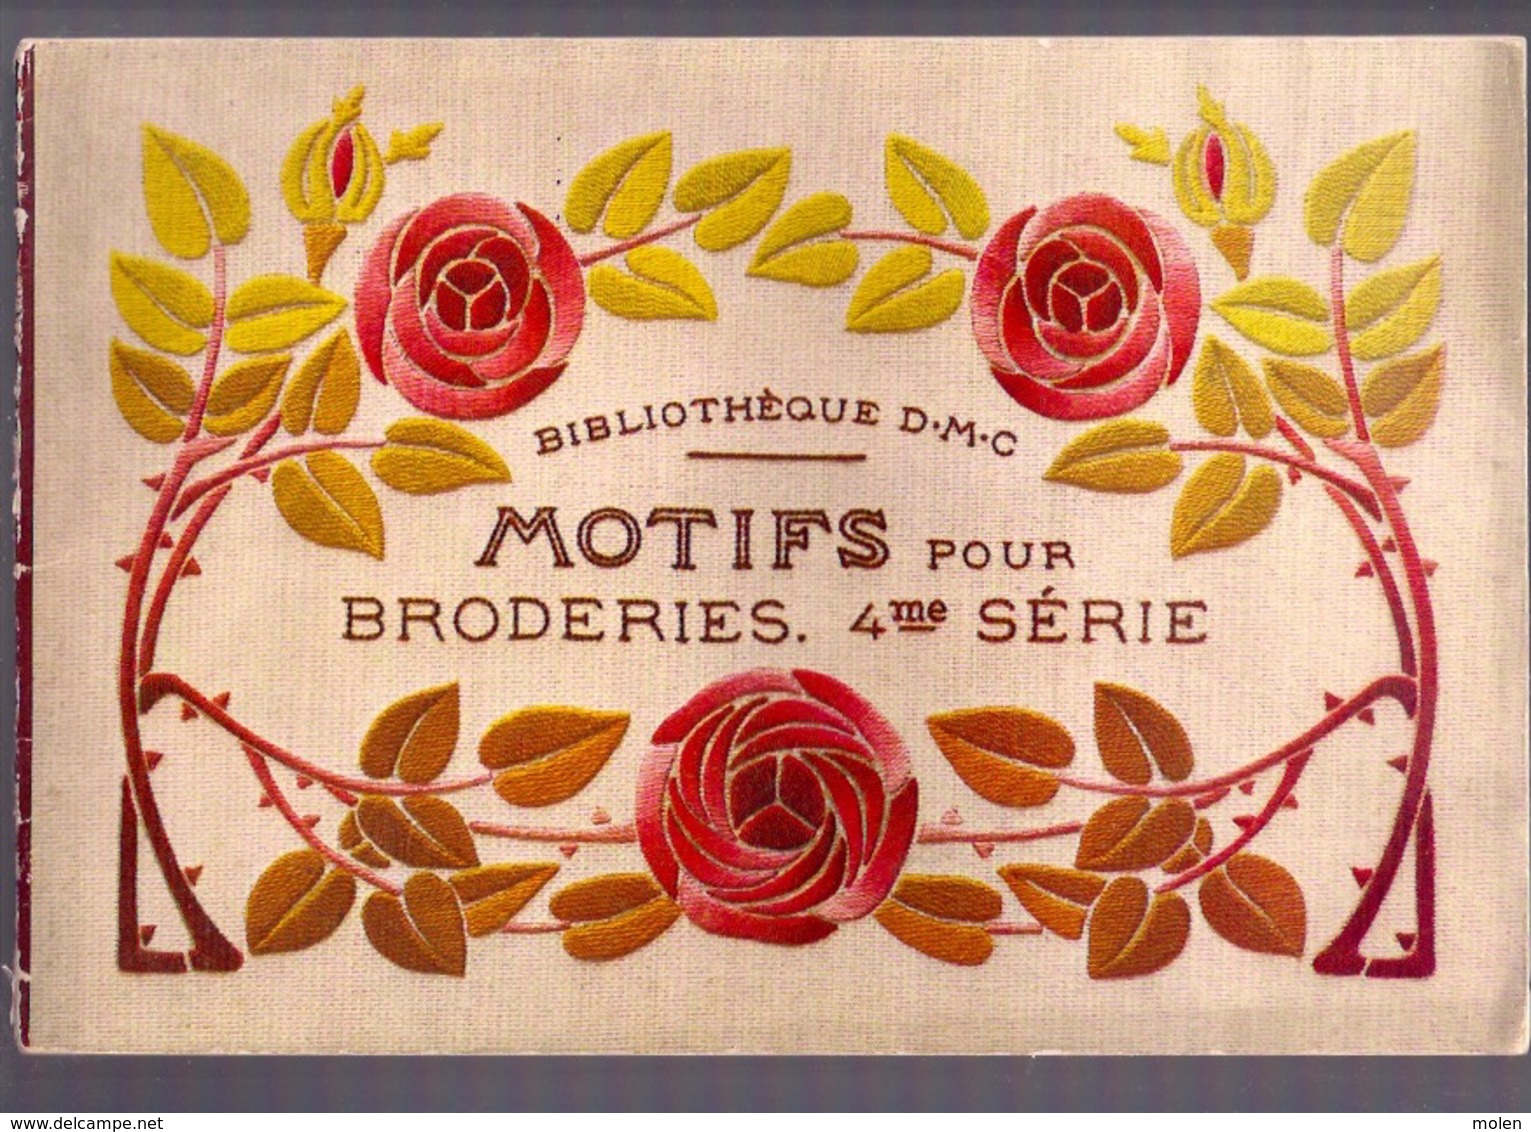 MOTIFS Pour BRODERIES 4me BIBLIOTHEQUE DMC Ca1935 BRODERIE D.M.C. POINT DE CROIX CROSS STITCH KRUISSTEEK DENTELLE Z214 - Point De Croix